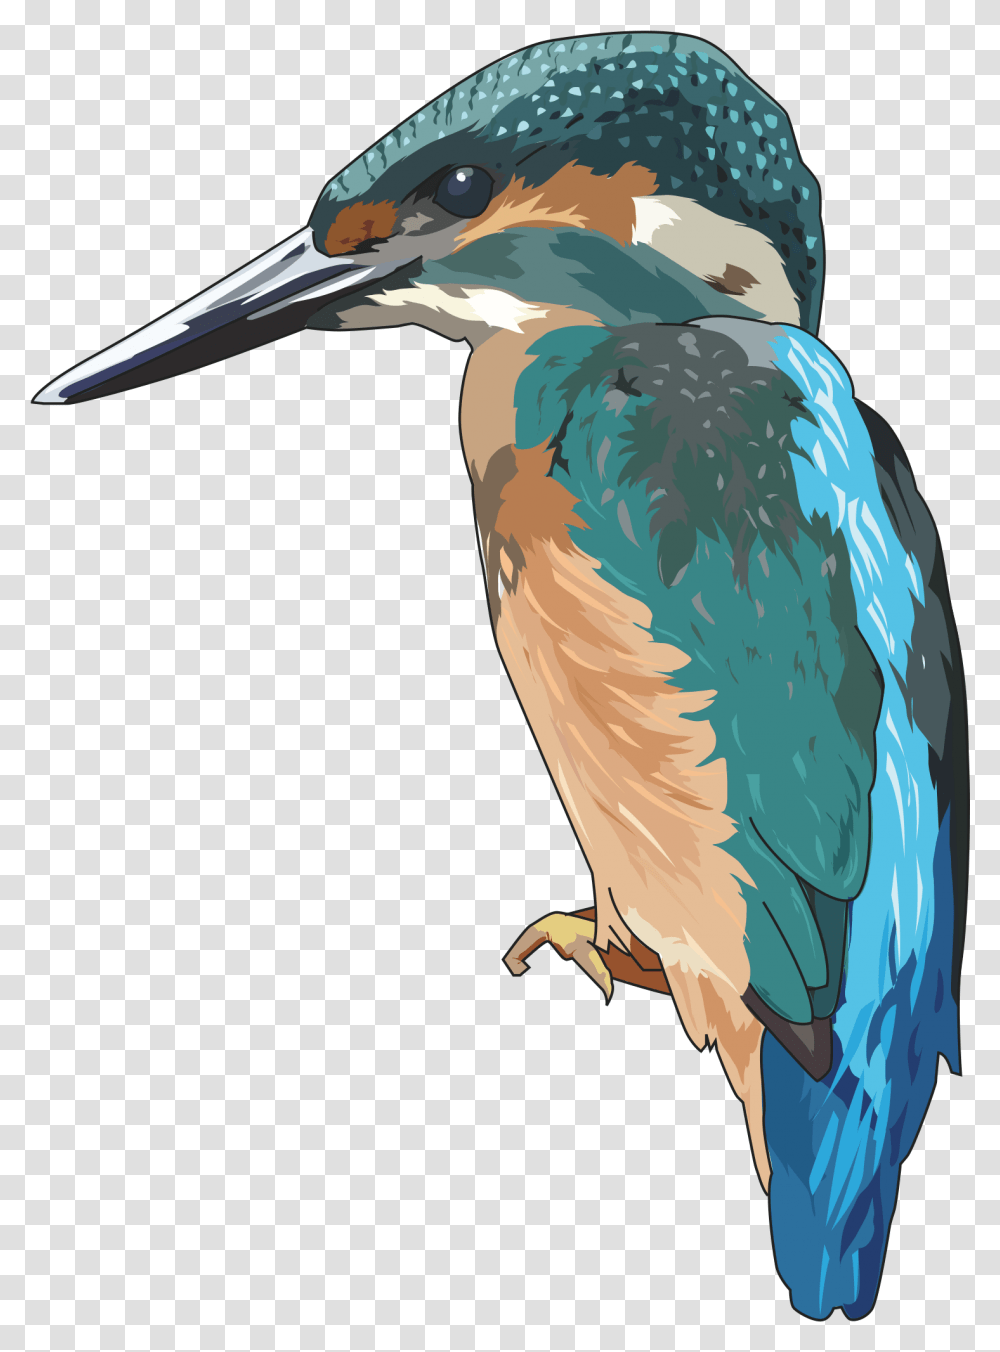 Kingfisher Clipart, Bird, Animal, Jay, Bluebird Transparent Png